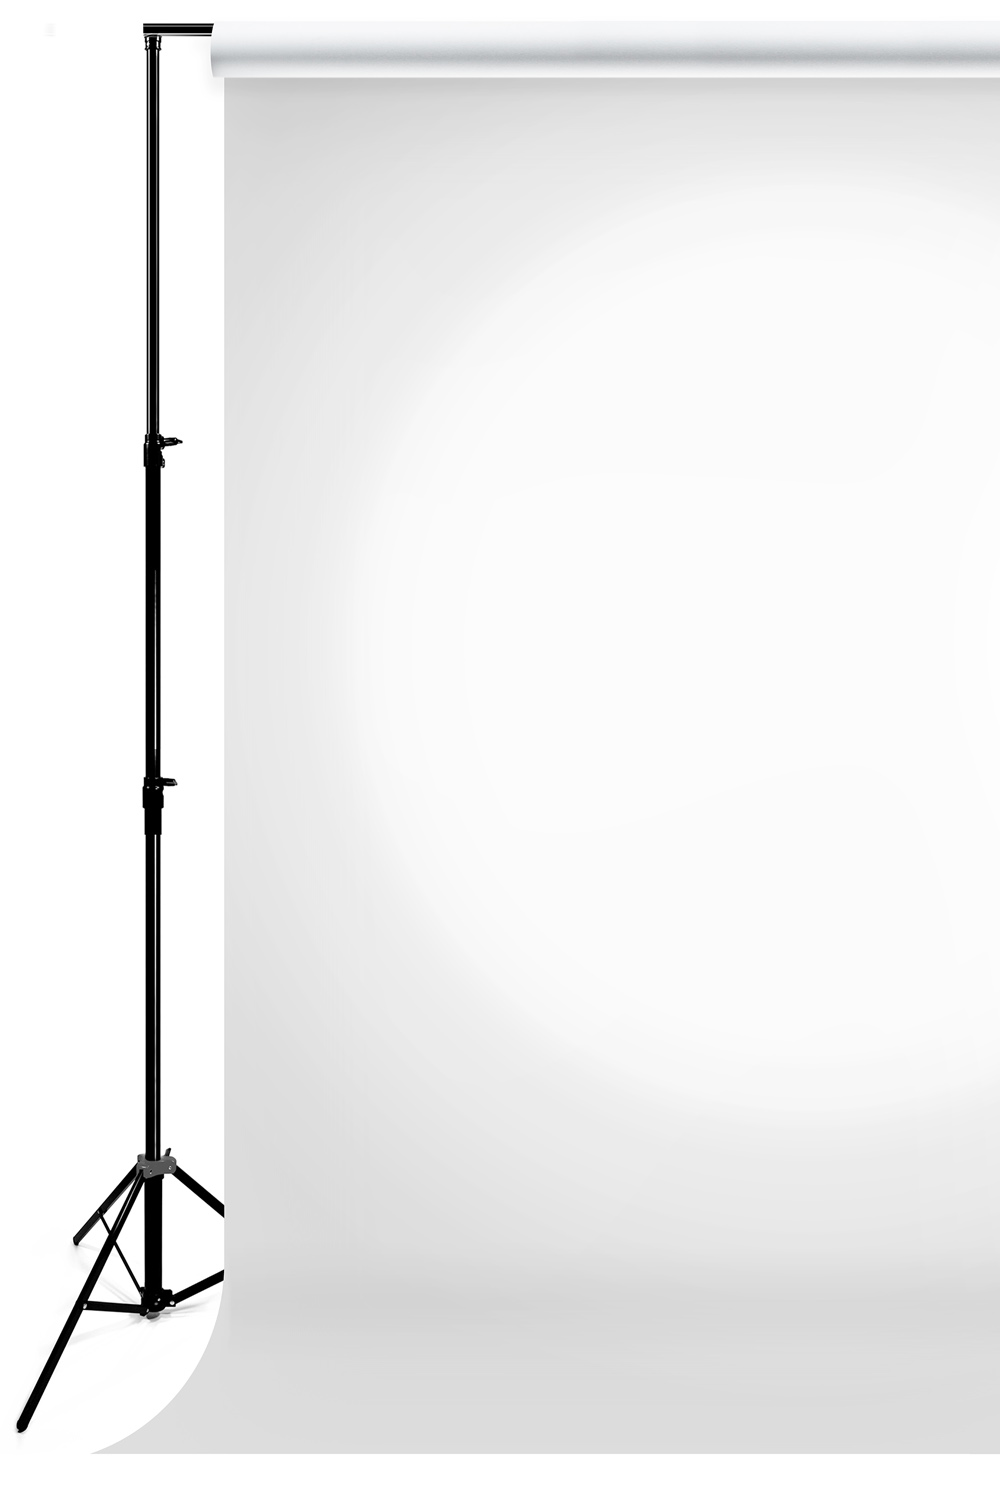 Savage pprzepuszczalne Translum Light Weight 1.52x5.49 m